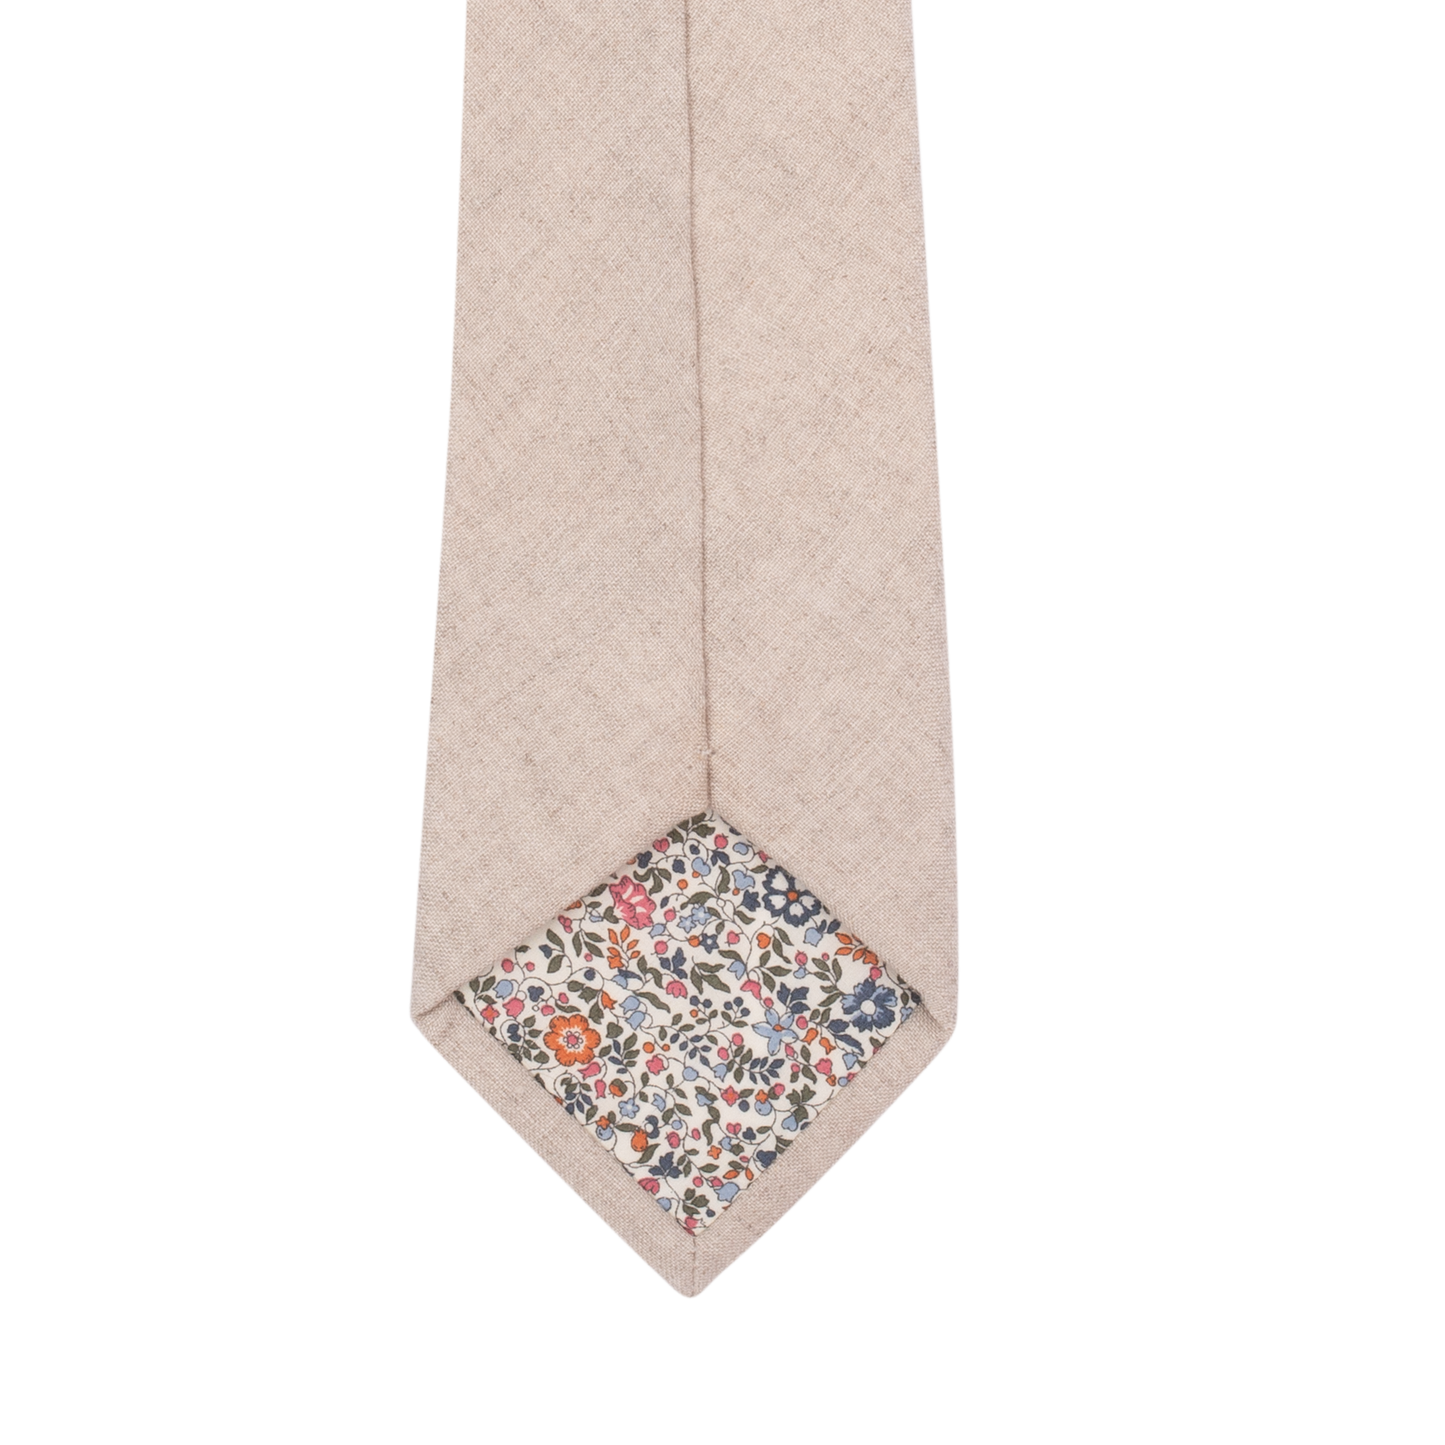 Natural Textured Linen White Tie